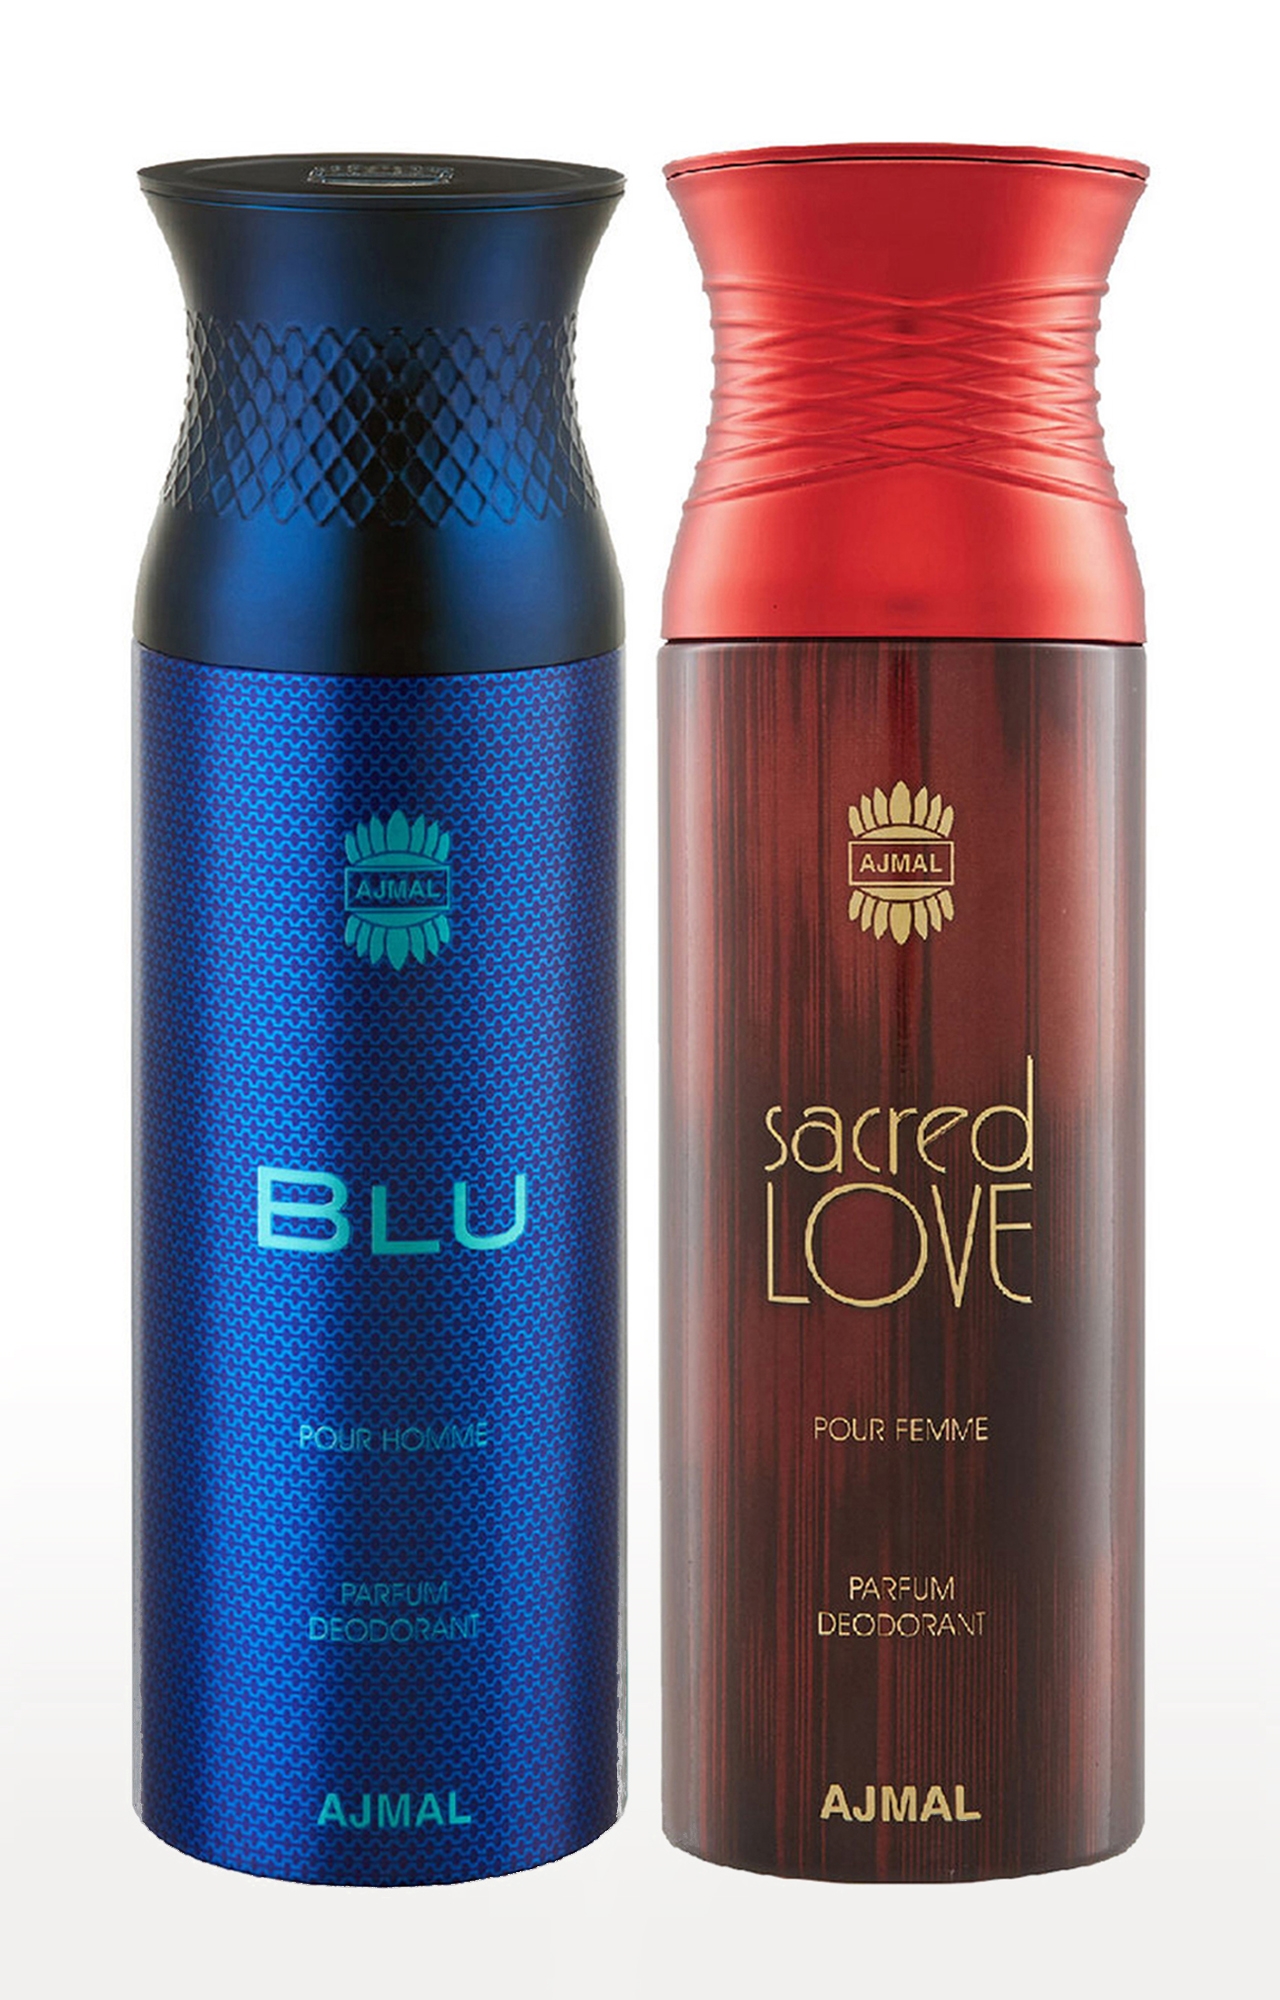 Ajmal Blu Homme & Sacredlove Deodorant Spray Gift For Men & Women (200 ml, Pack of 2) 